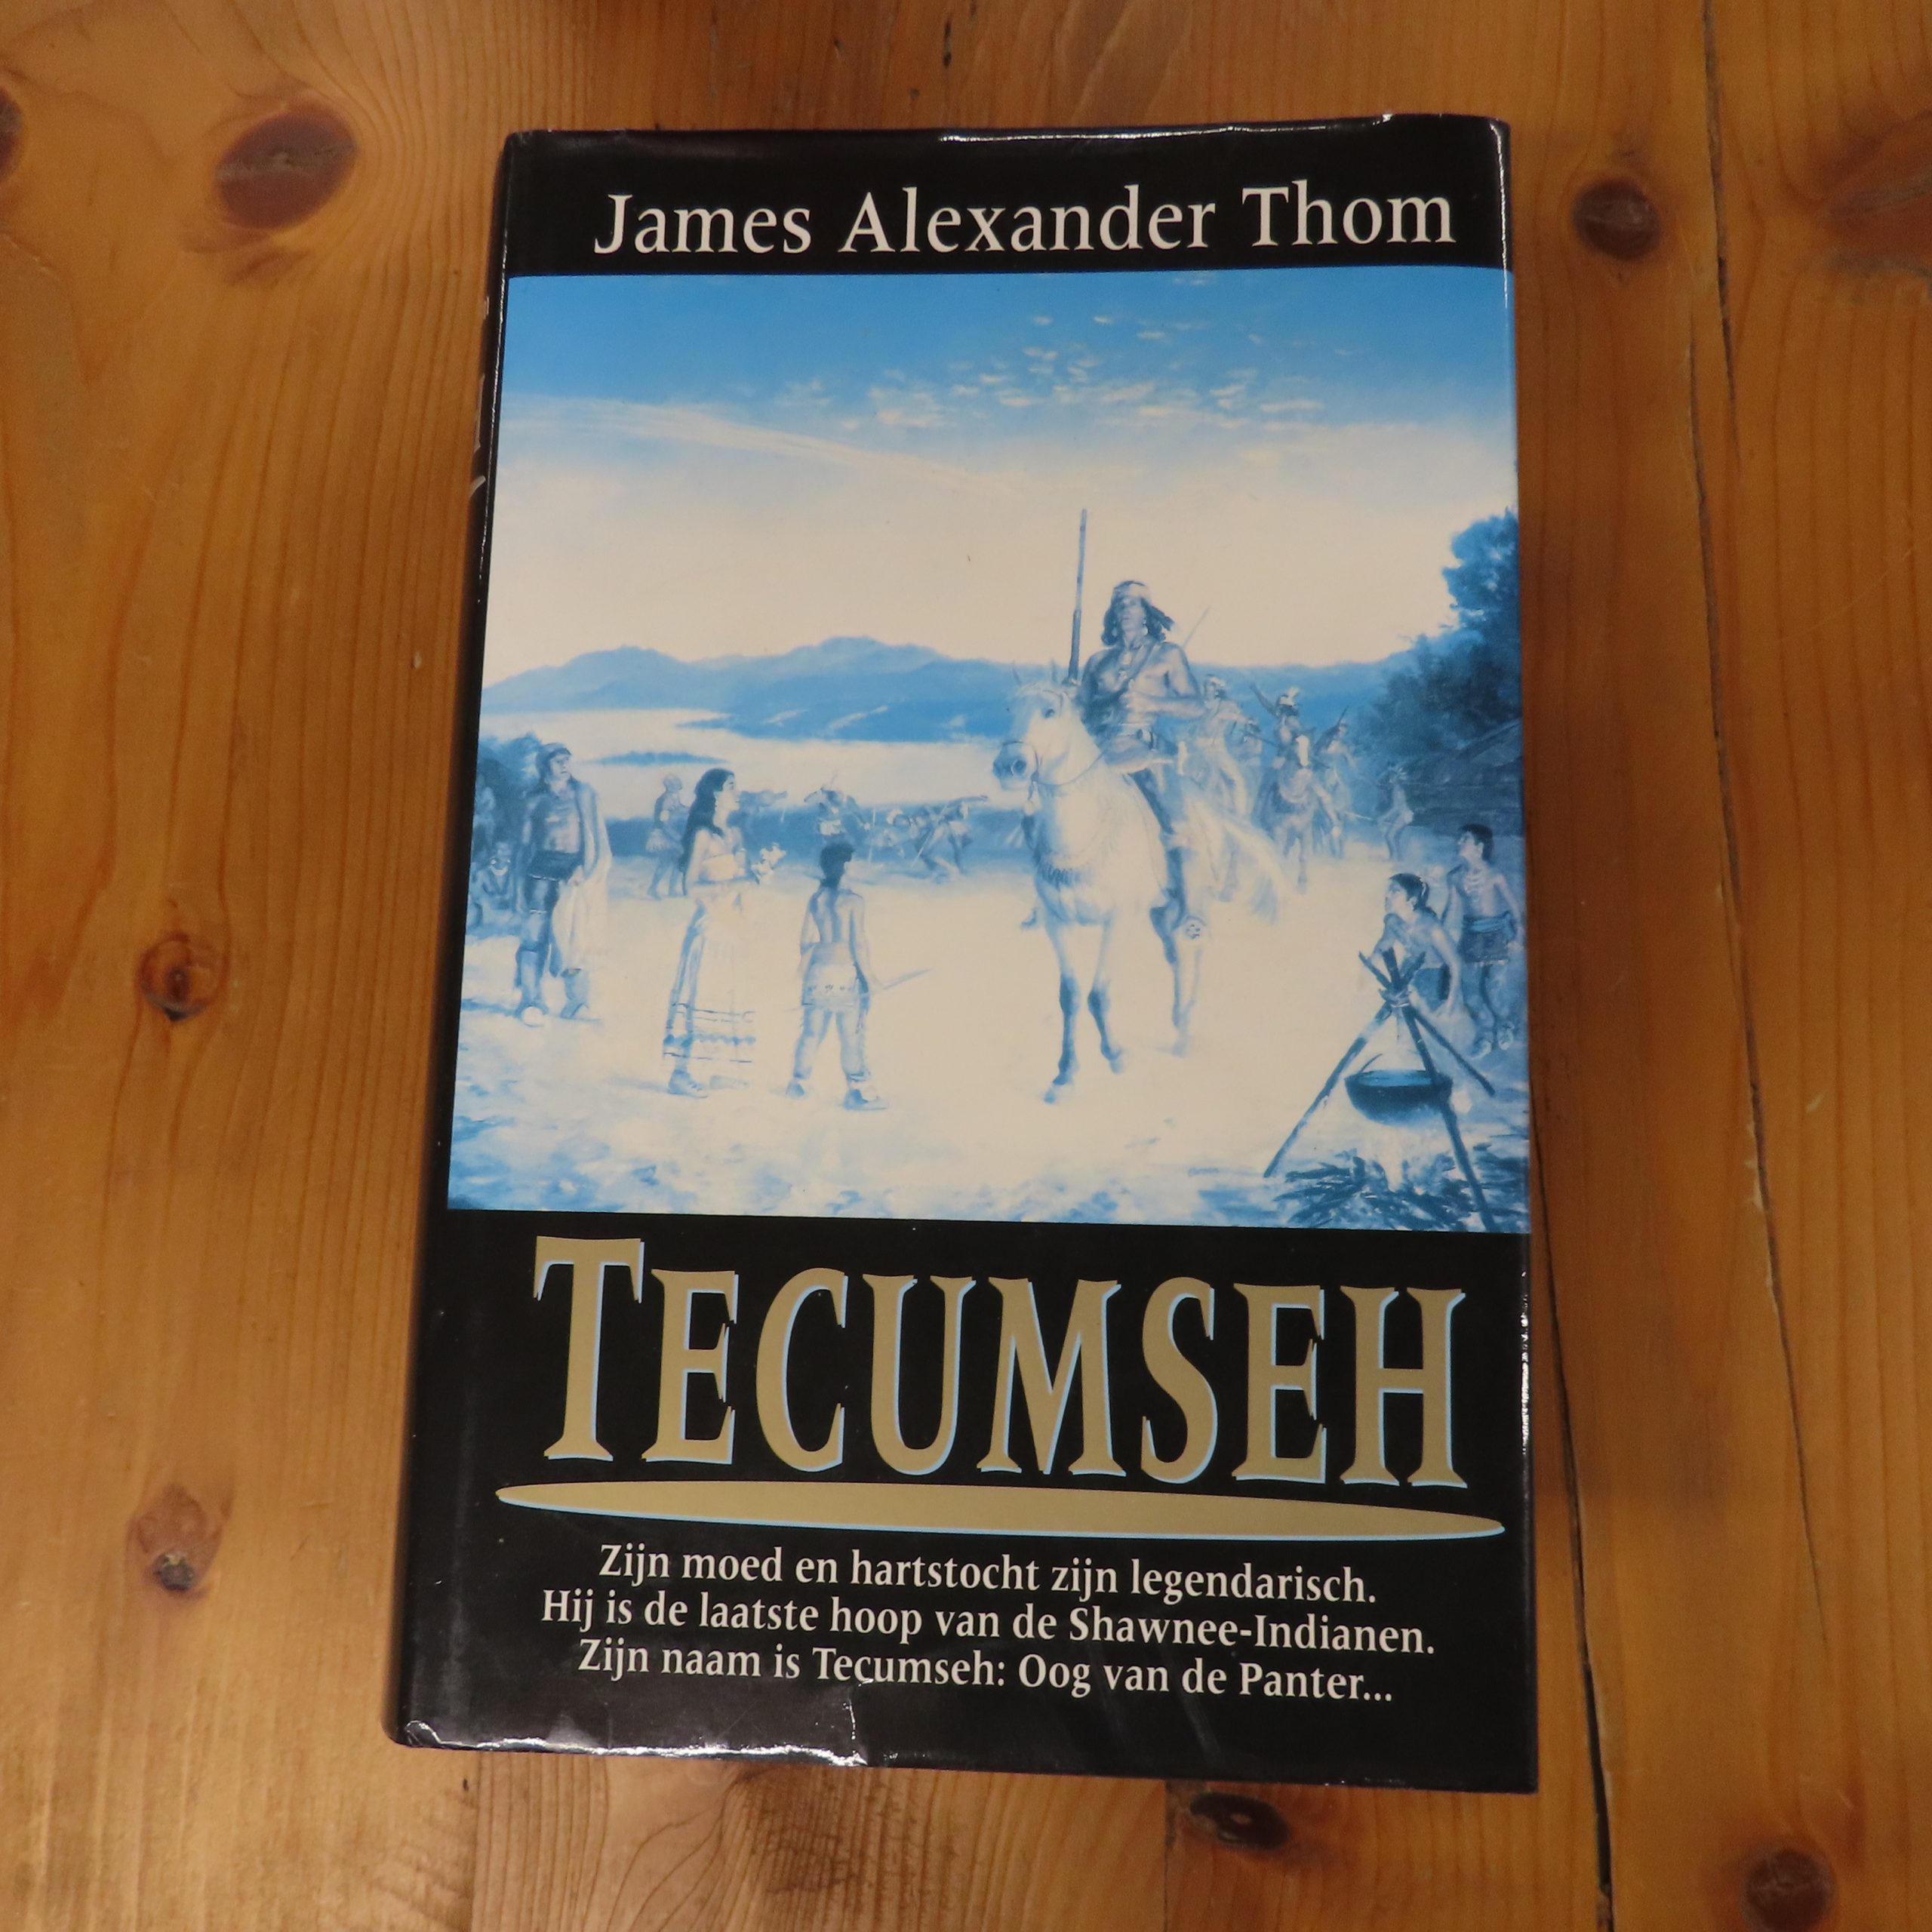 Boek “Tecumseh” van James Alexander Thom